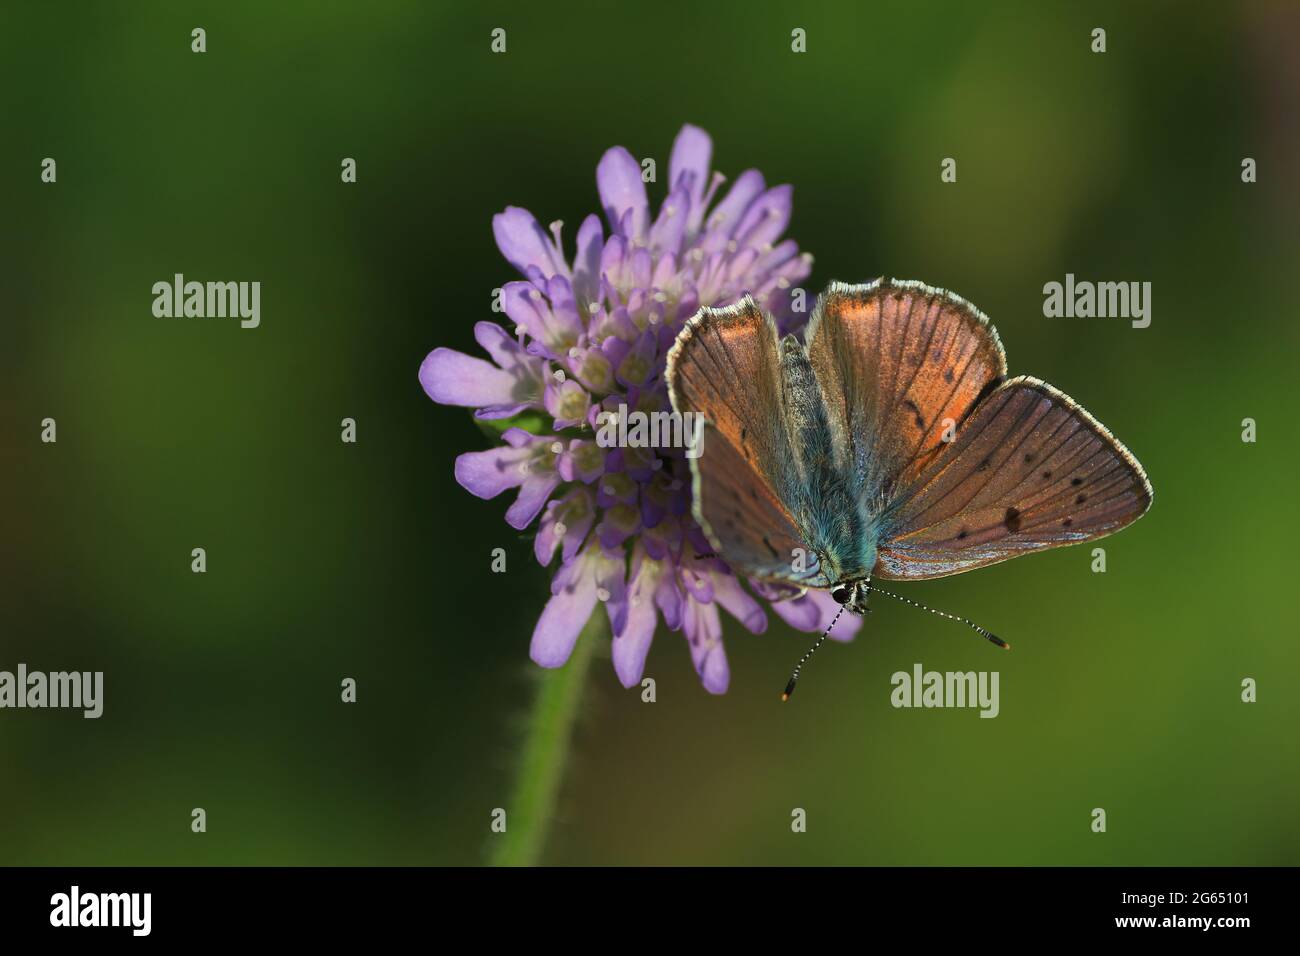 Fleur de papillon. Lycaena alciphron, cuivre violet. Un papillon brun cuivré avec des ailes étalées se trouve sur une fleur pourpre. Espace pour le texte. Banque D'Images